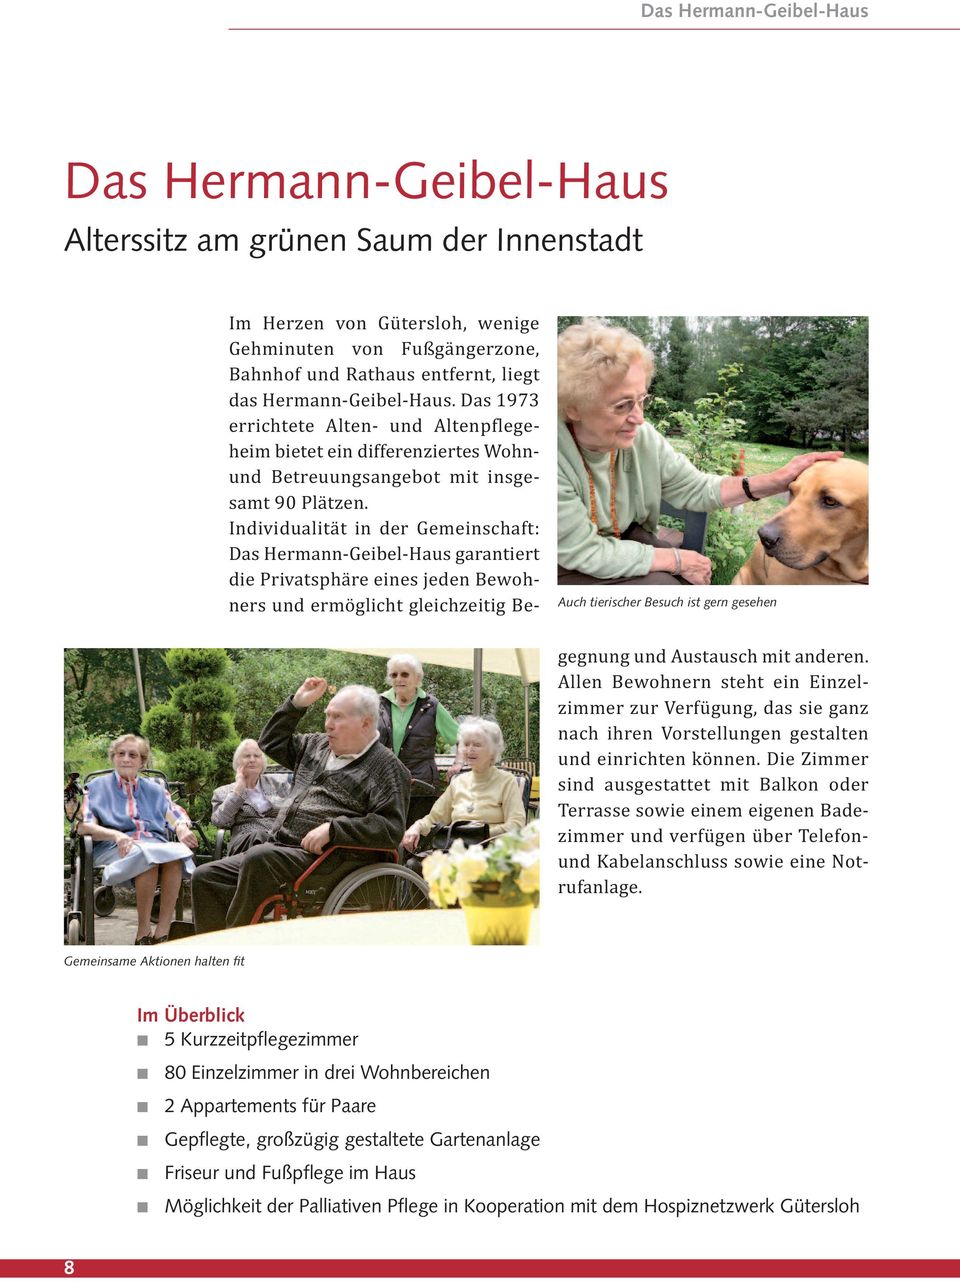 Individualität in der Gemeinschaft: Das Hermann-Geibel-Haus garantiert die Privatsphäre eines jeden Bewohners und ermöglicht gleichzeitig Begegnung und Austausch mit anderen.